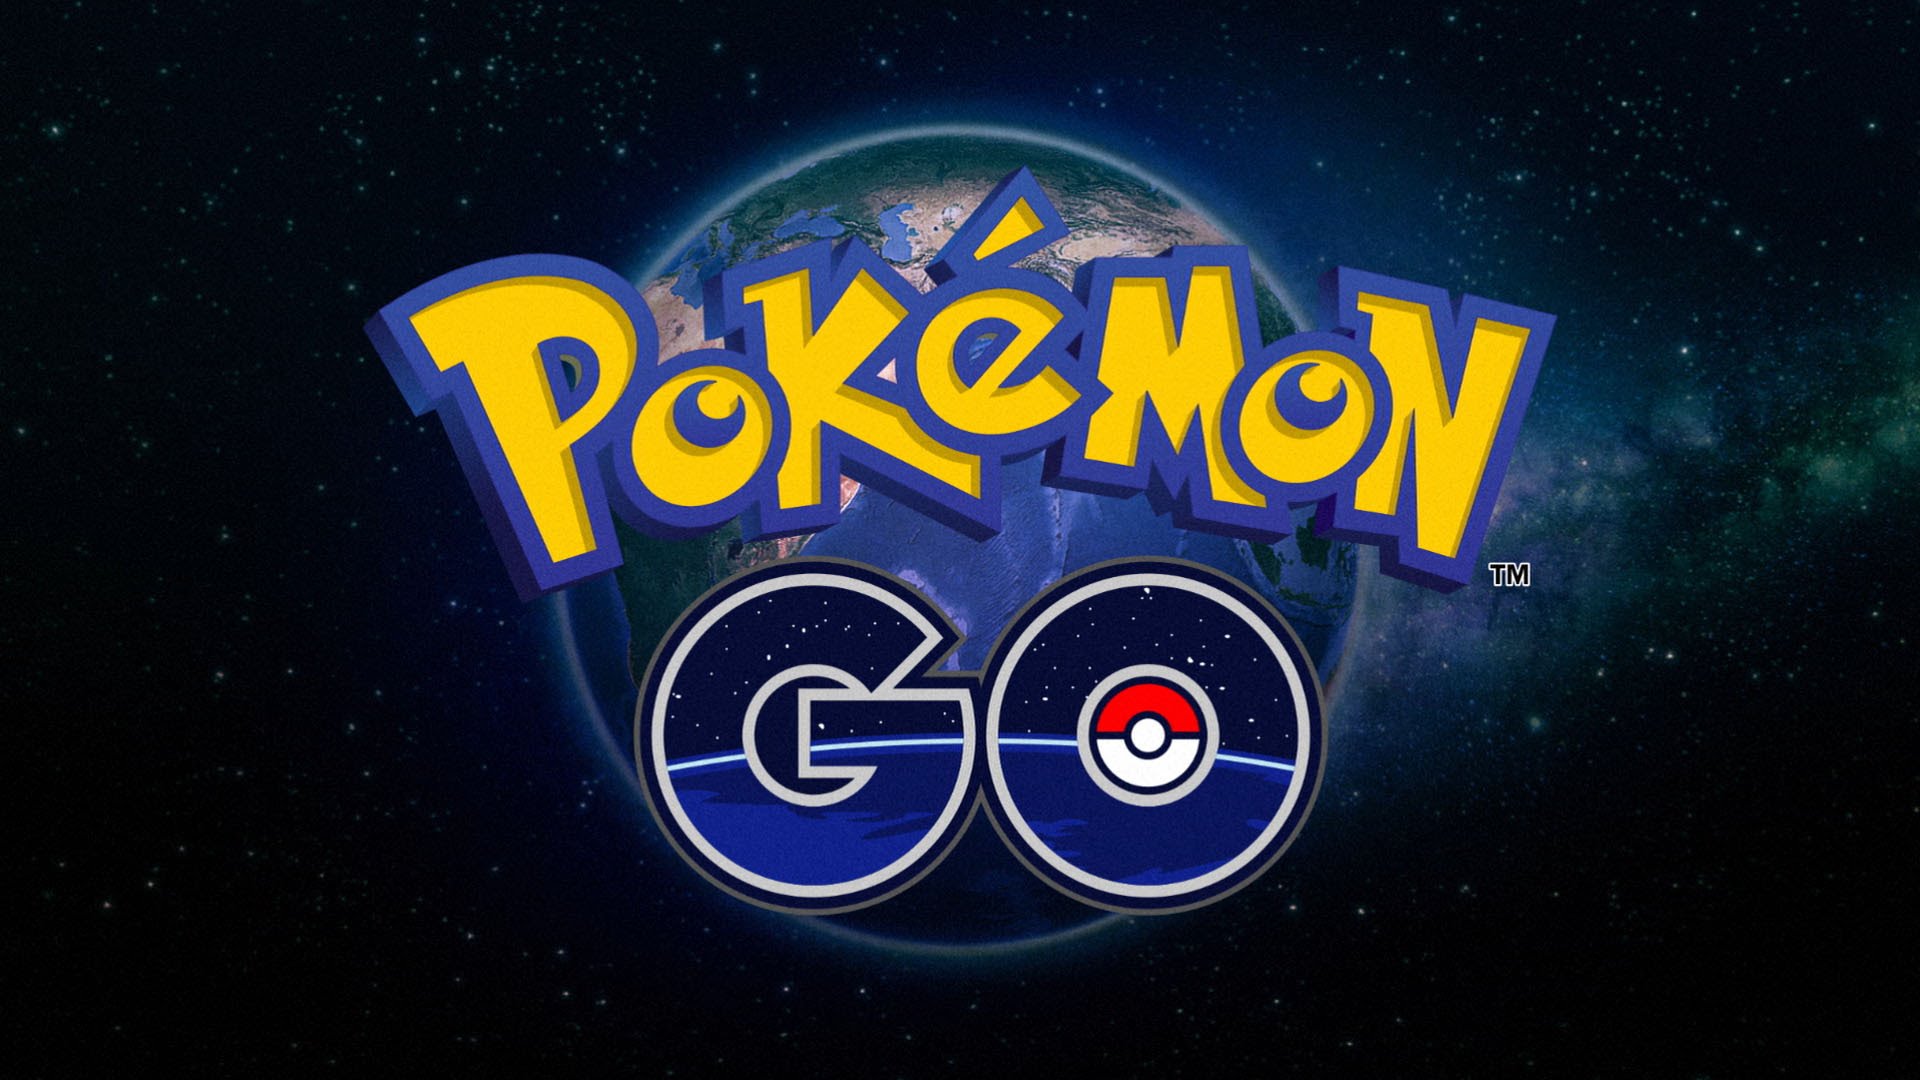 Presseschau Pokémon Go Prisma Google